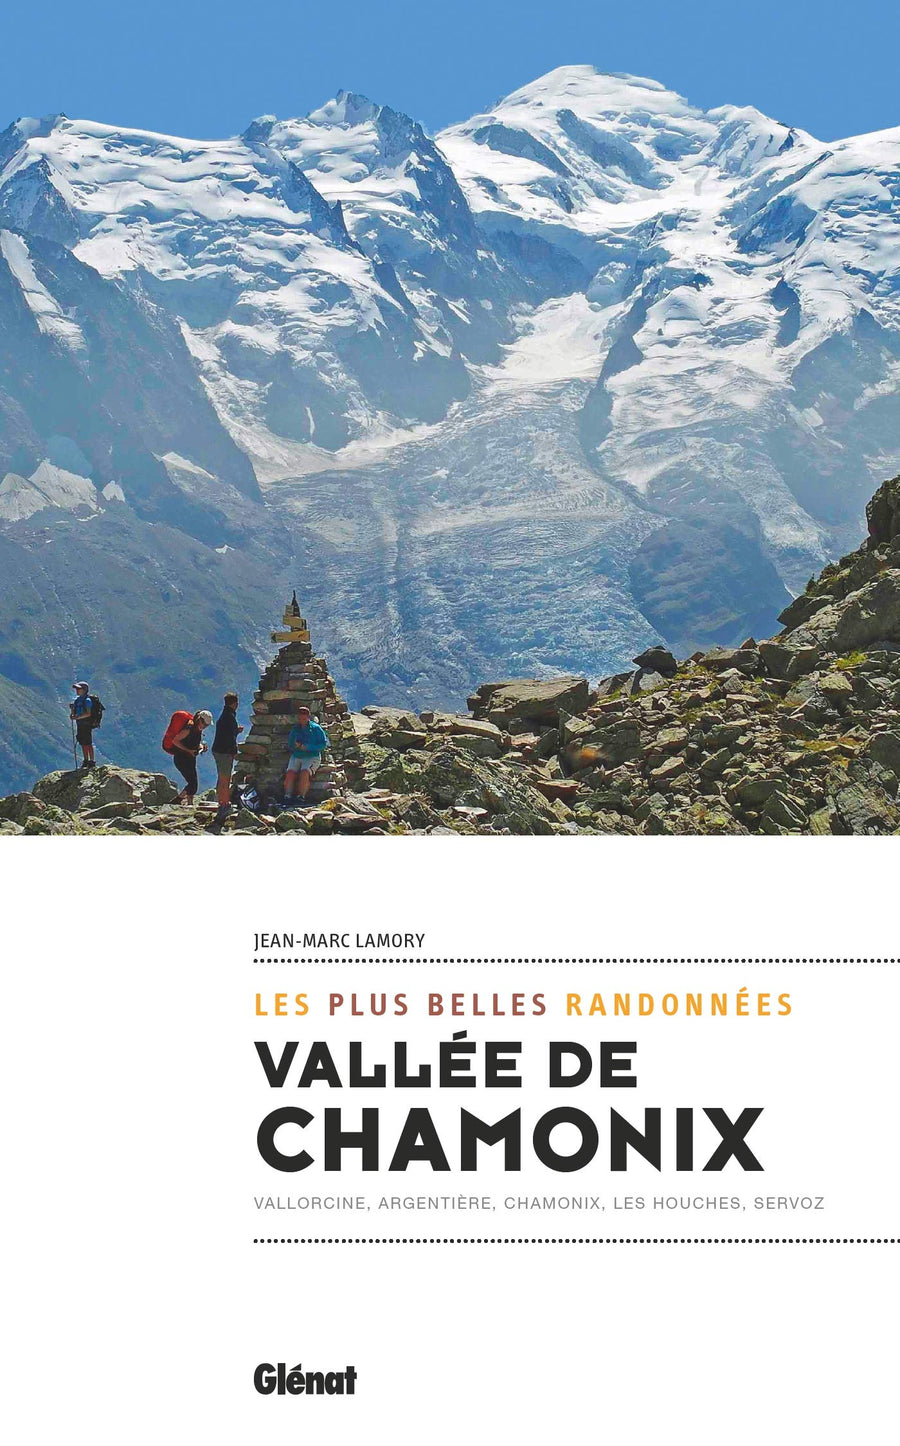 Guide de randonnées - Vallée de Chamonix | Glénat guide de randonnée Glénat 